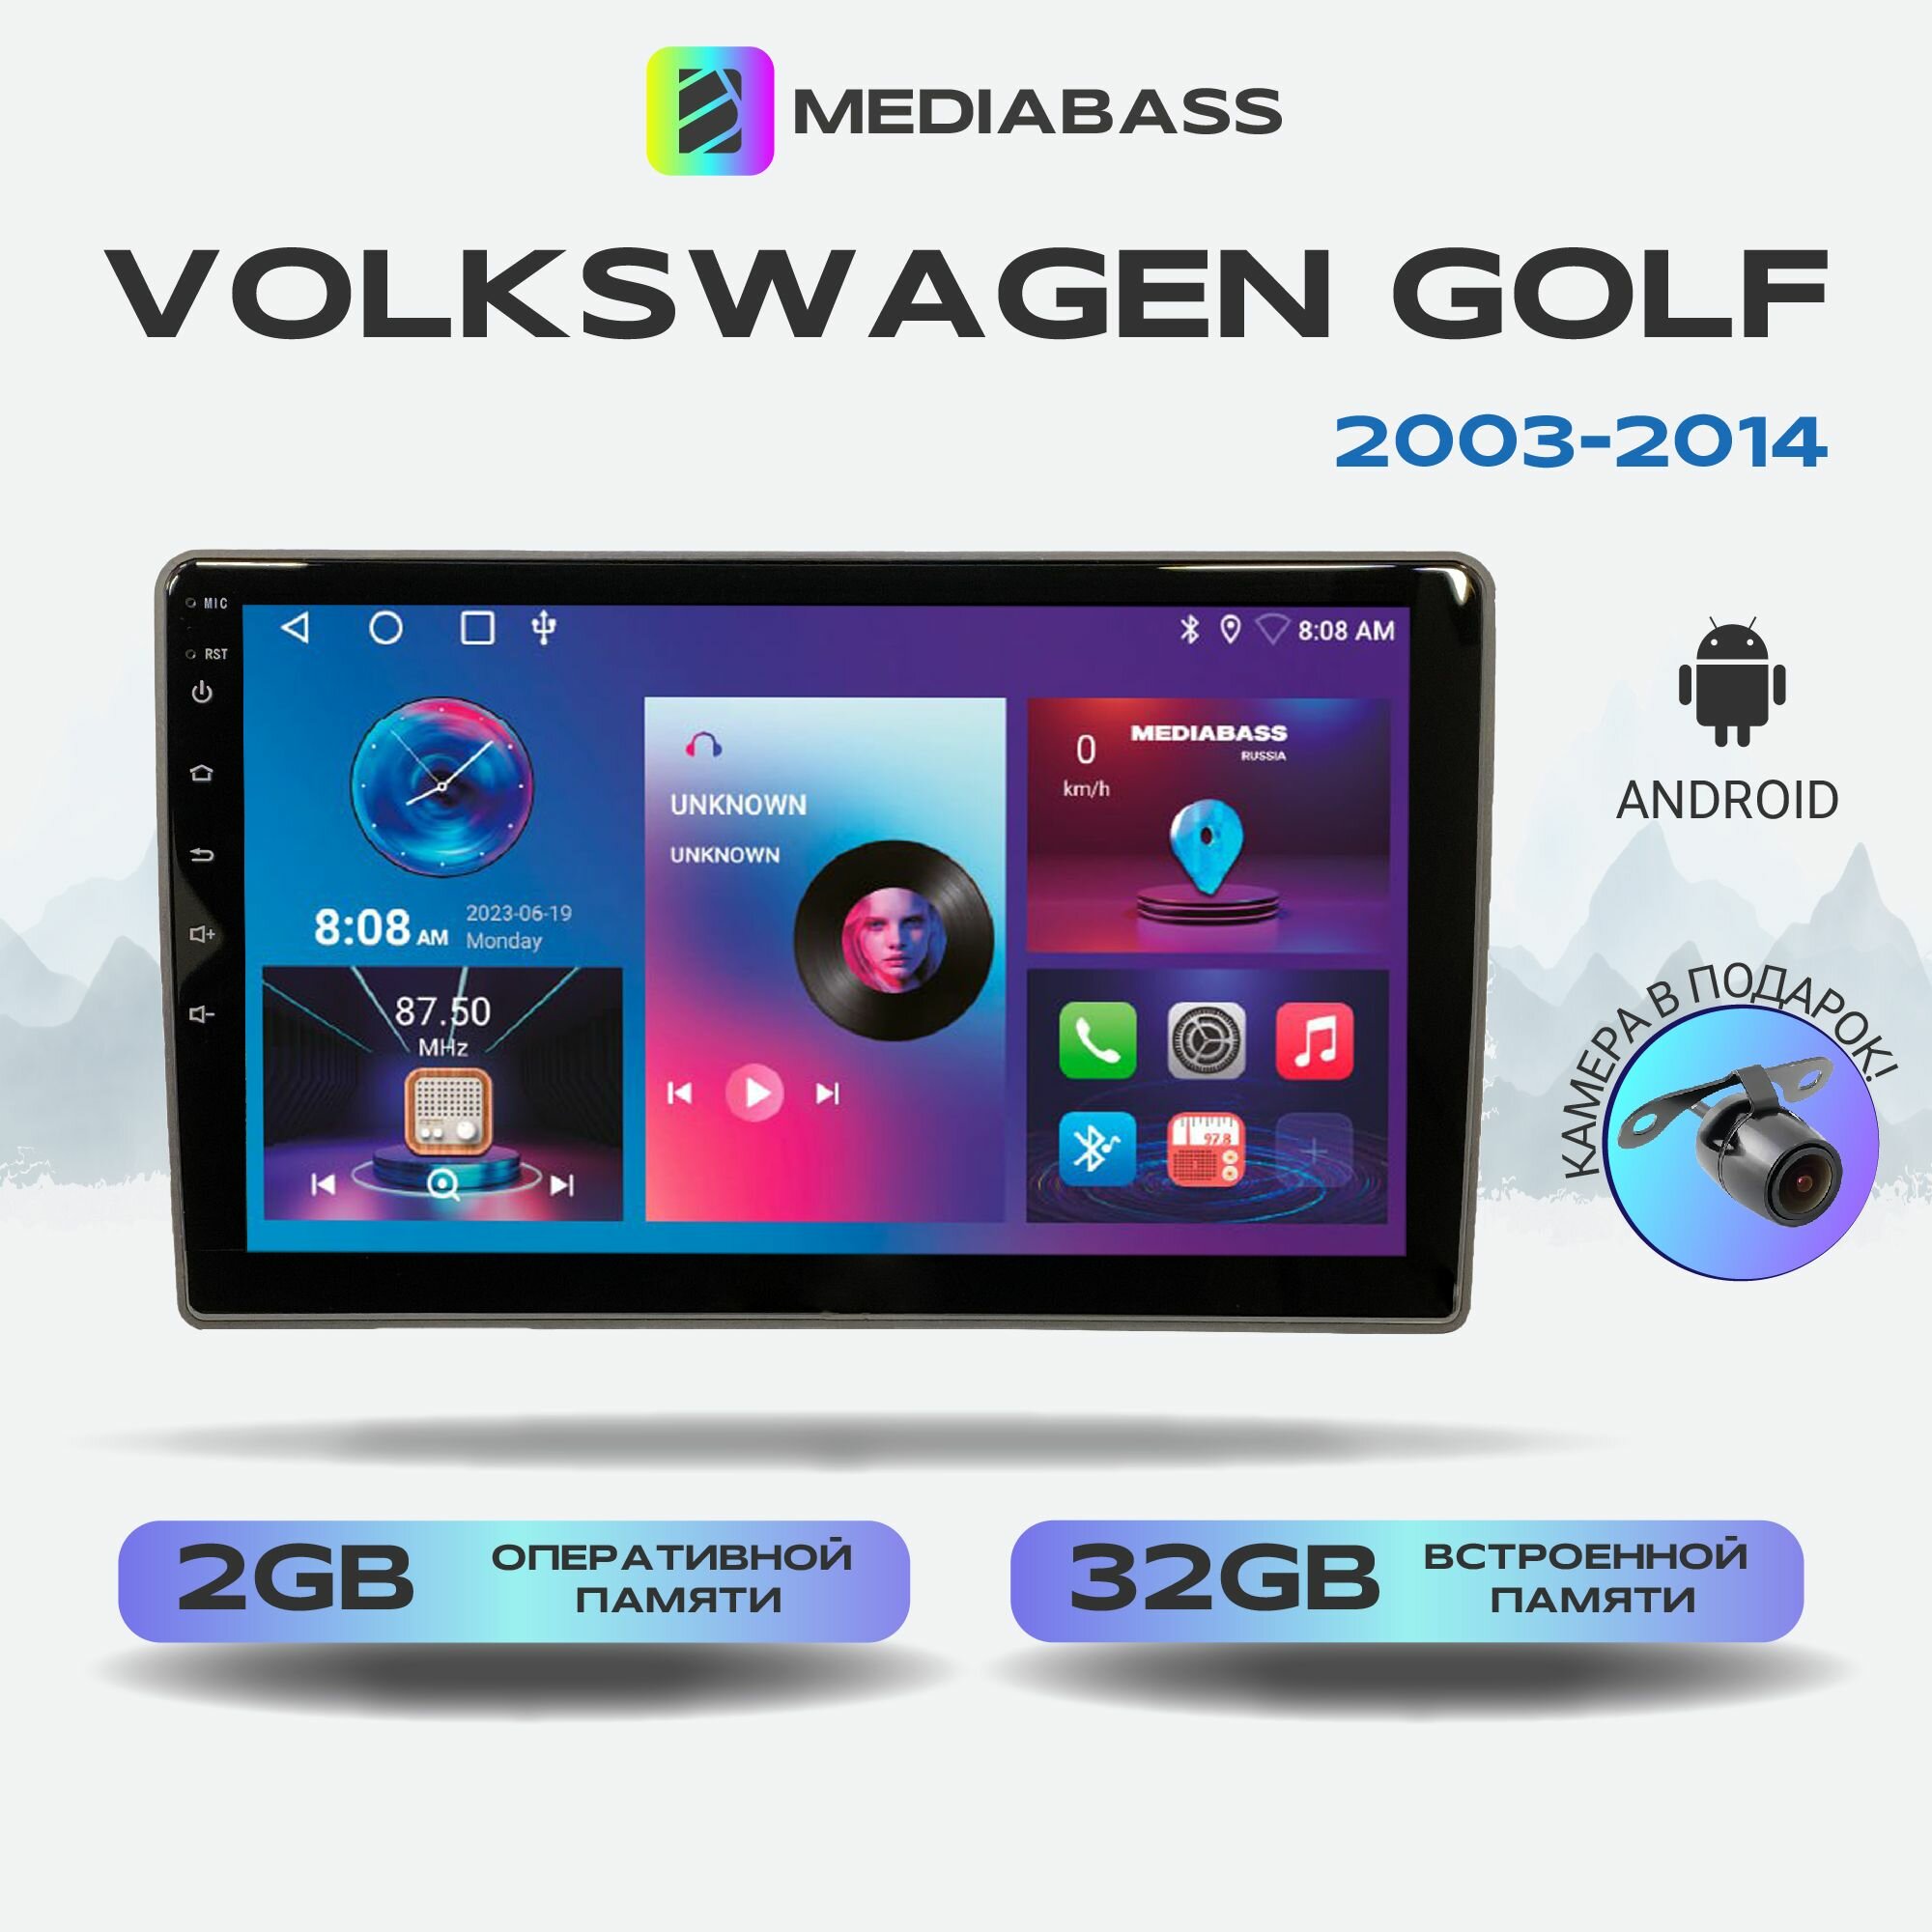 Автомагнитола Mediabass Volkswagen Golf 2003-2014, 2/32ГБ, 4-ядерный процессор, QLED экран с разрешением 1280*720, чип-усилитель YD7388, Android 12 / Фольксваген Гольф